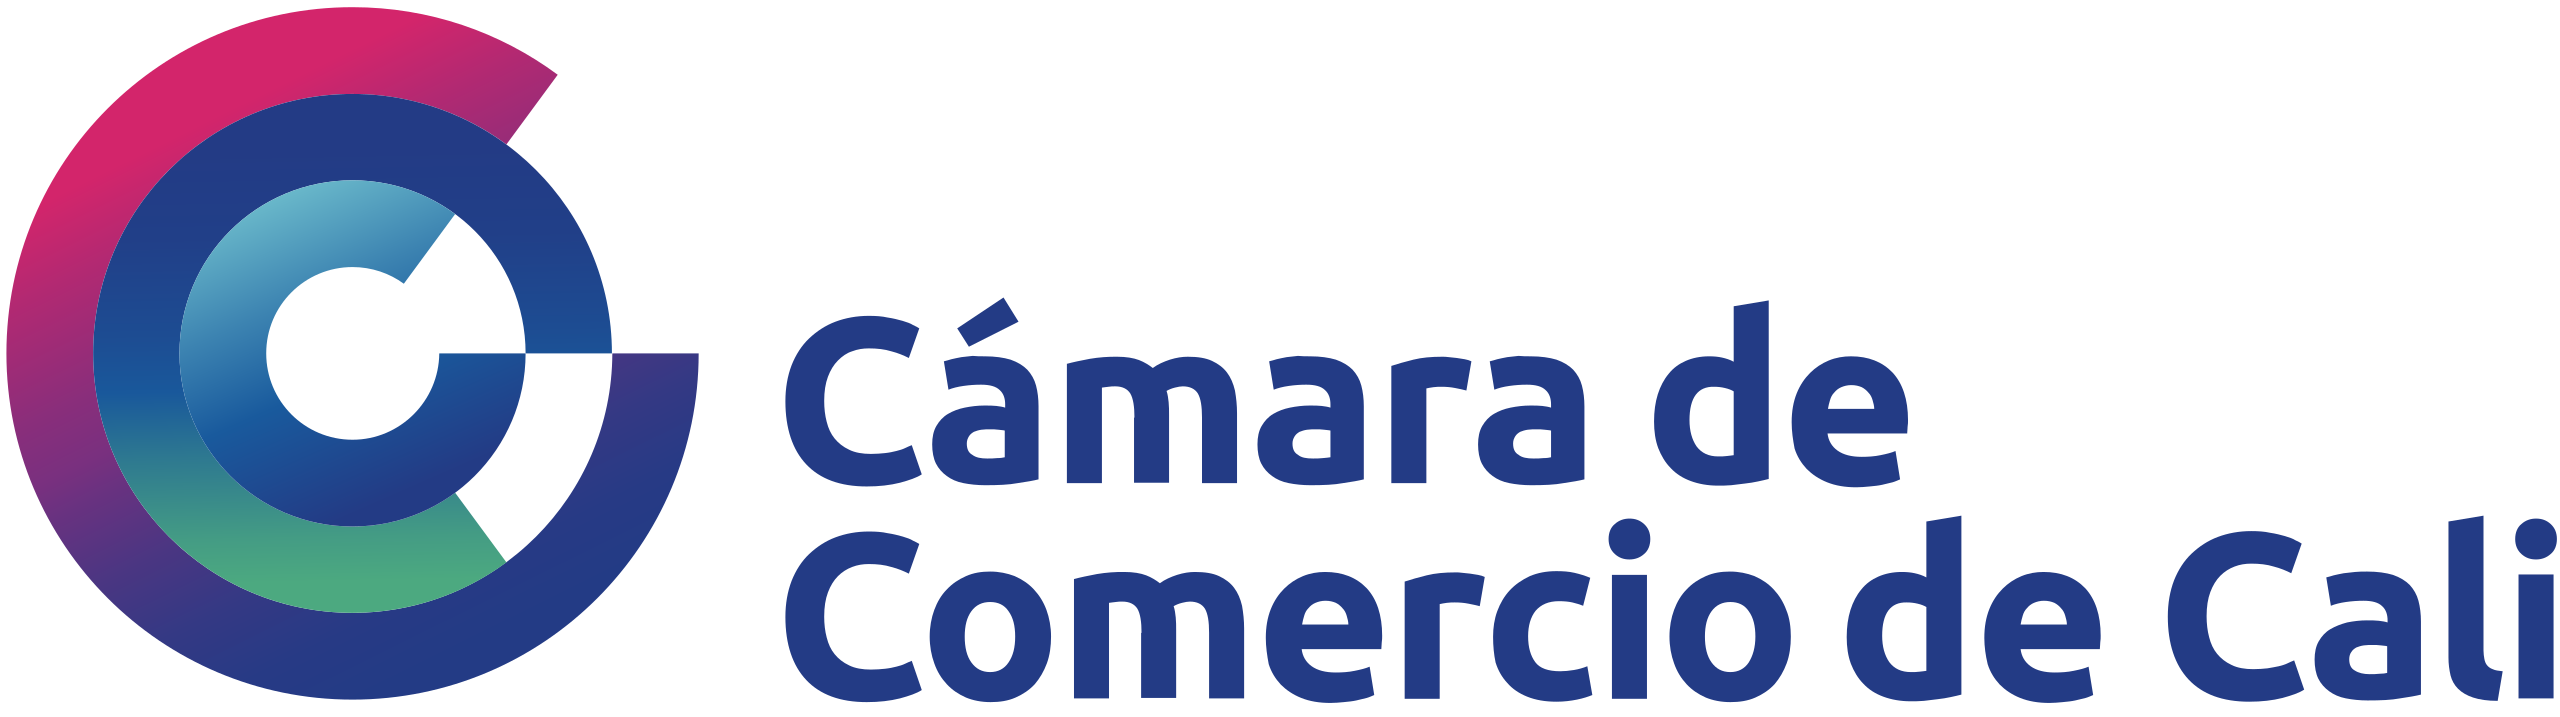 Cámara_de_Comercio_de_Cali_logo.svg